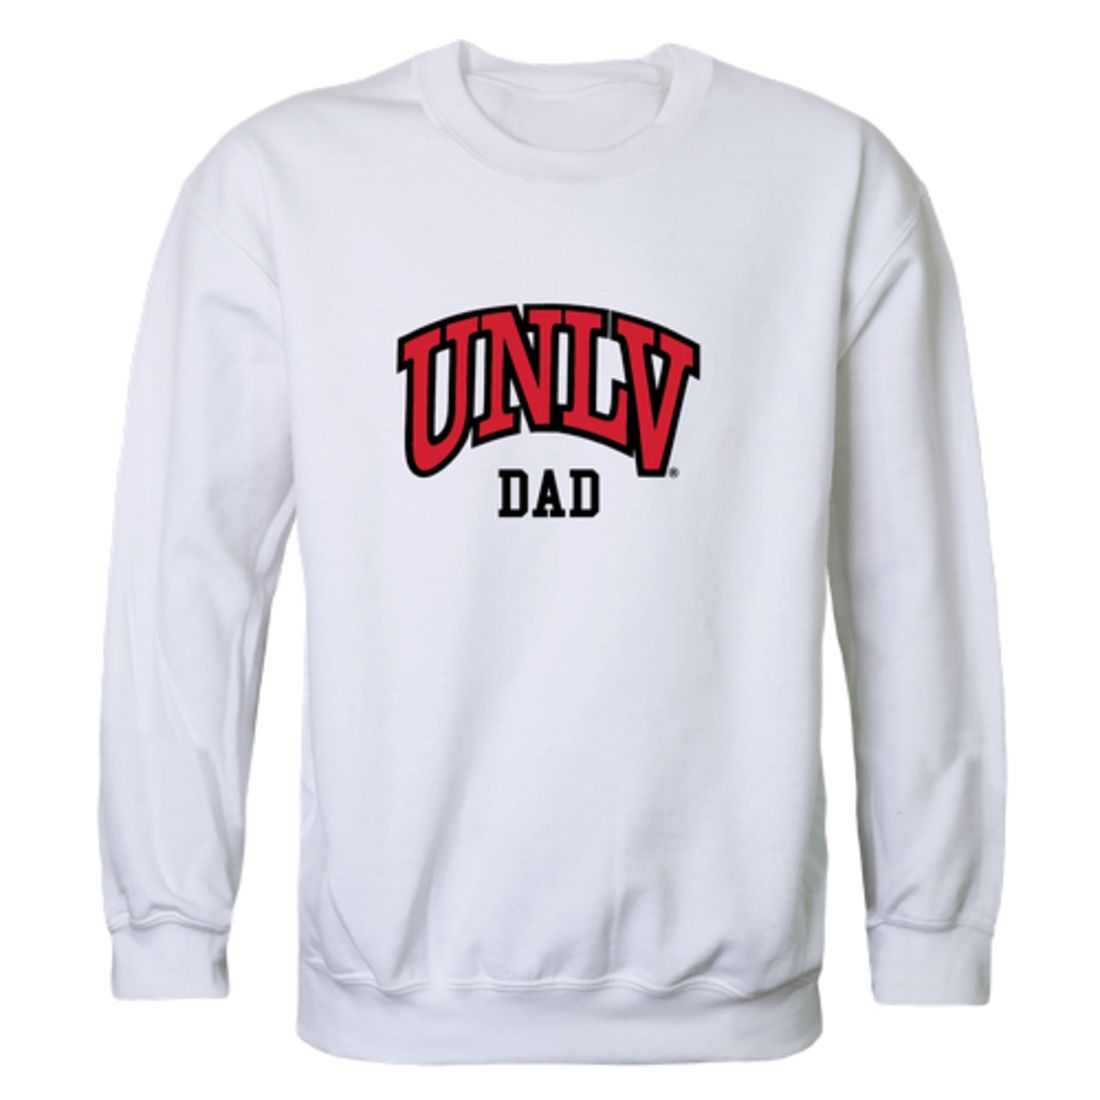 UNLV University of Nevada Las Vegas Rebels Dad Fleece Crewneck Pullover Sweatshirt Heather Grey-Campus-Wardrobe